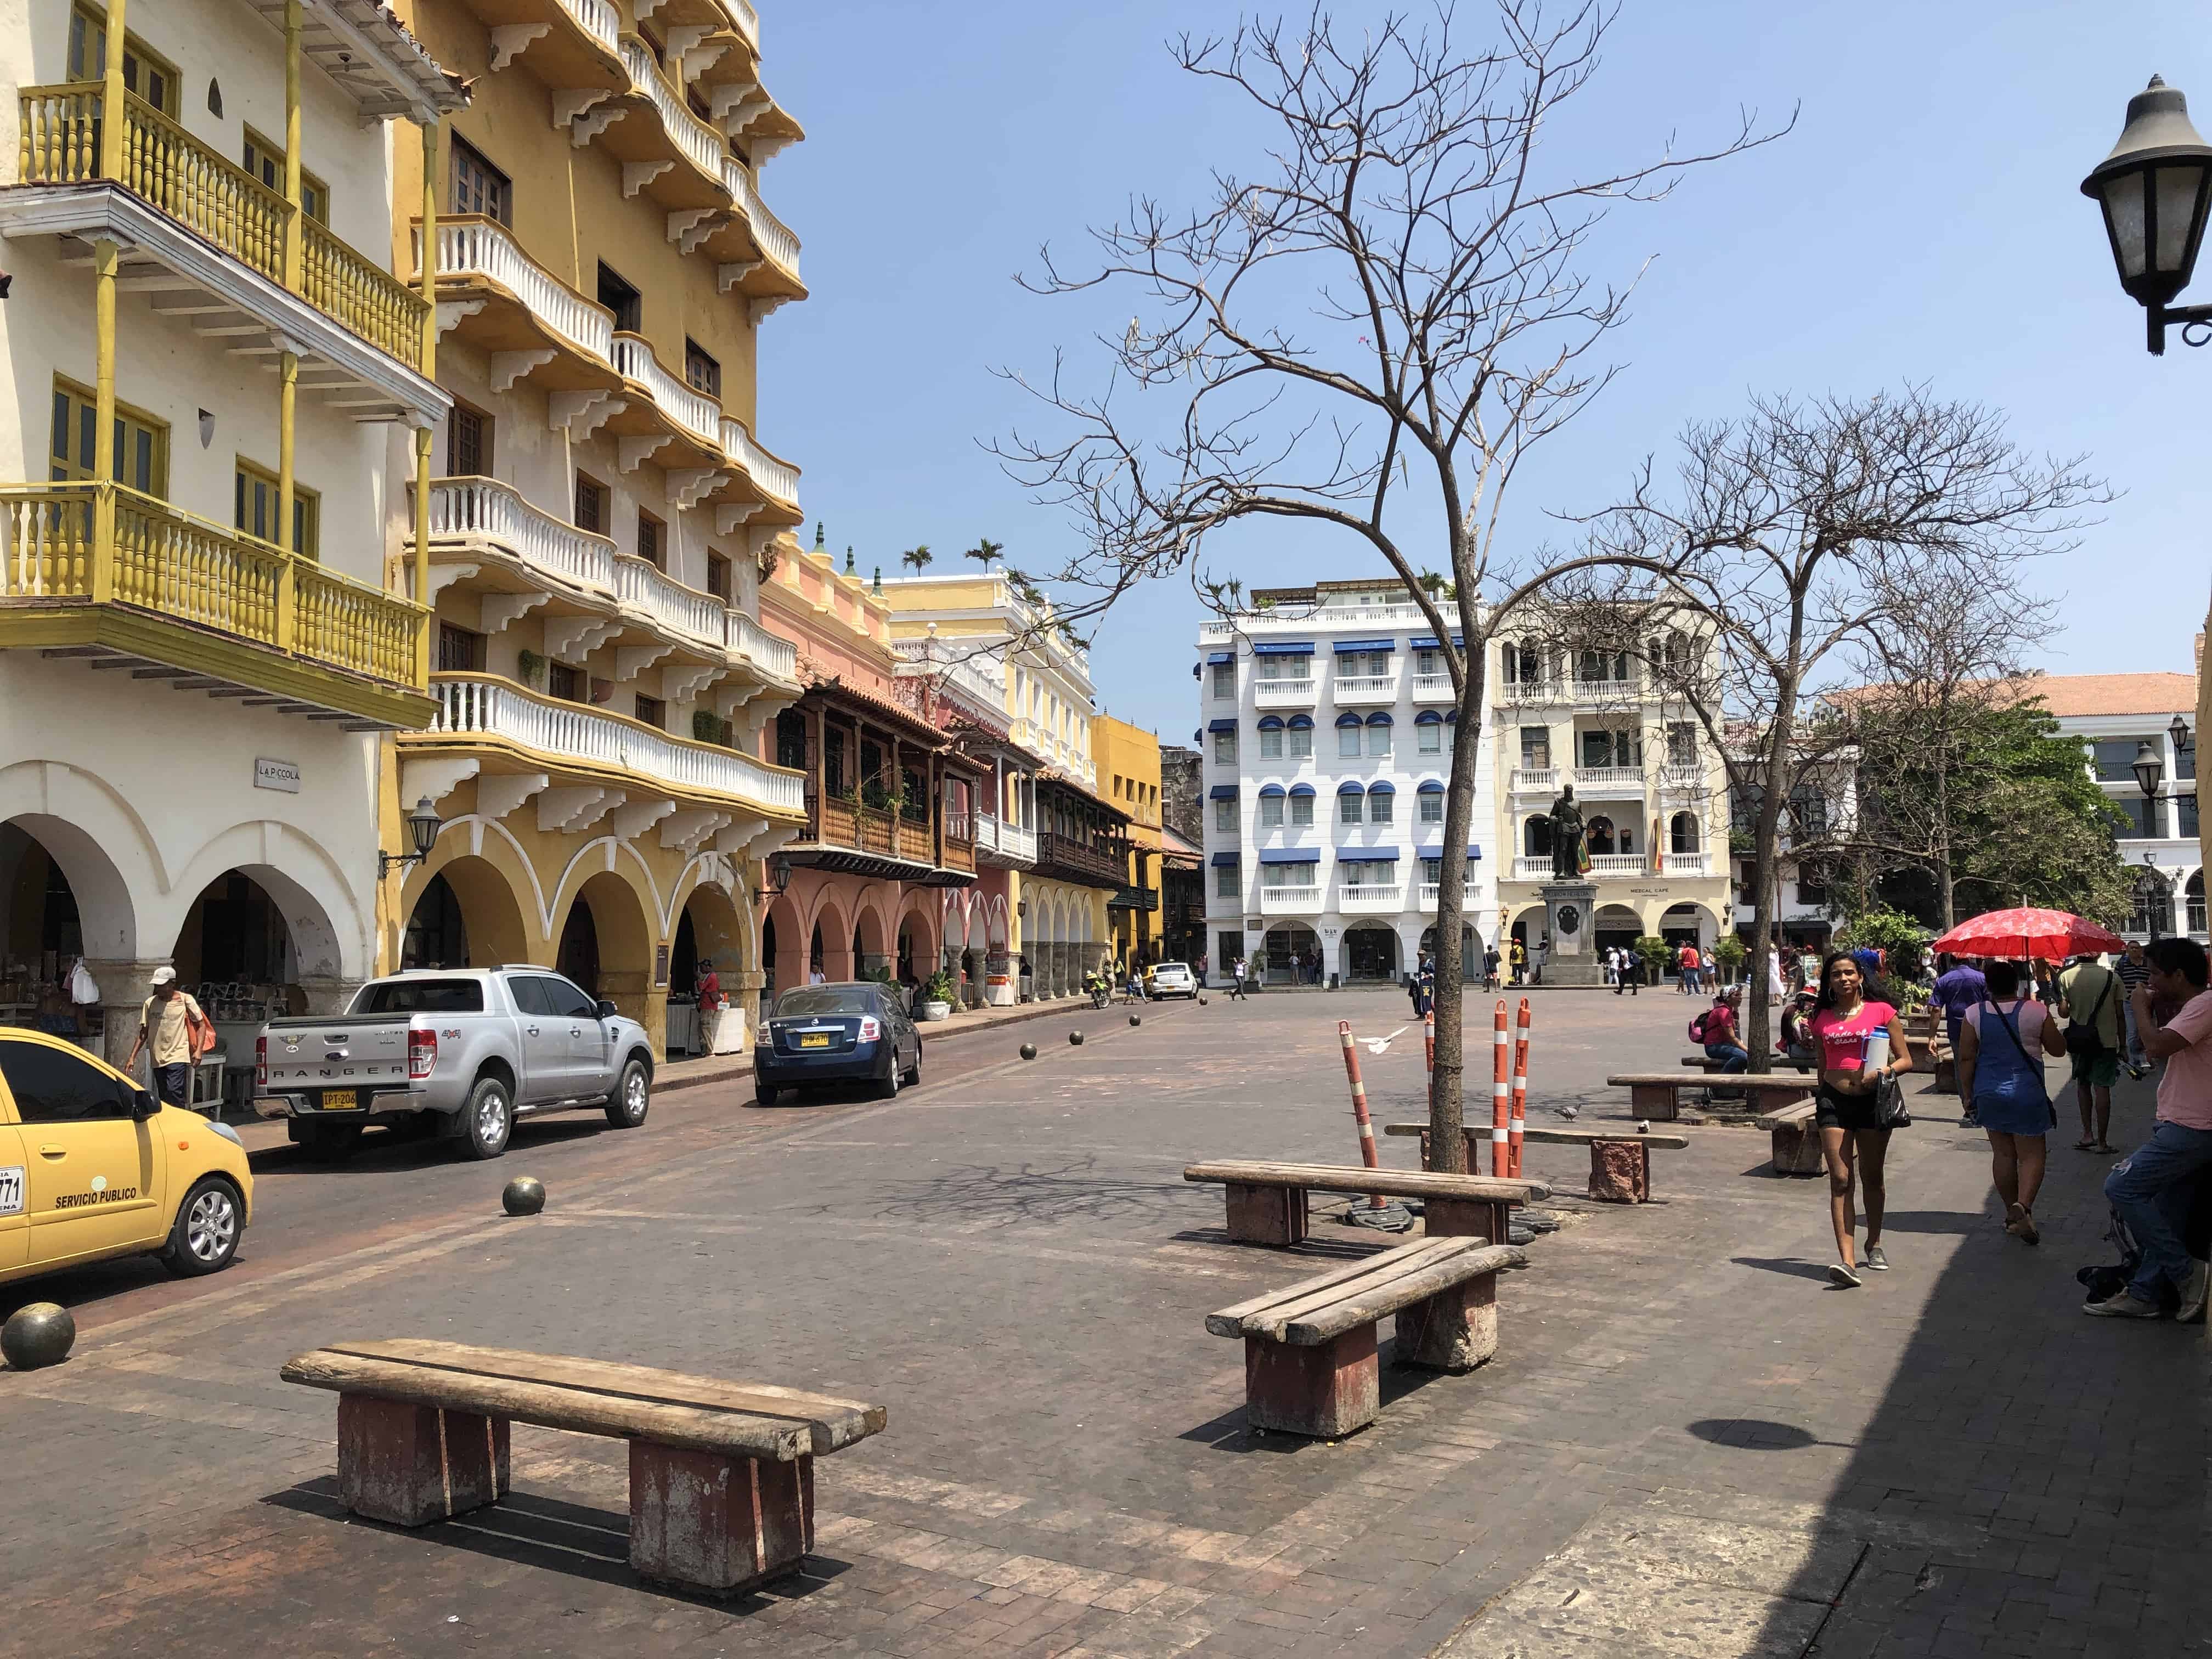 Plaza de los Coches in El Centro, Cartagena, Colombia